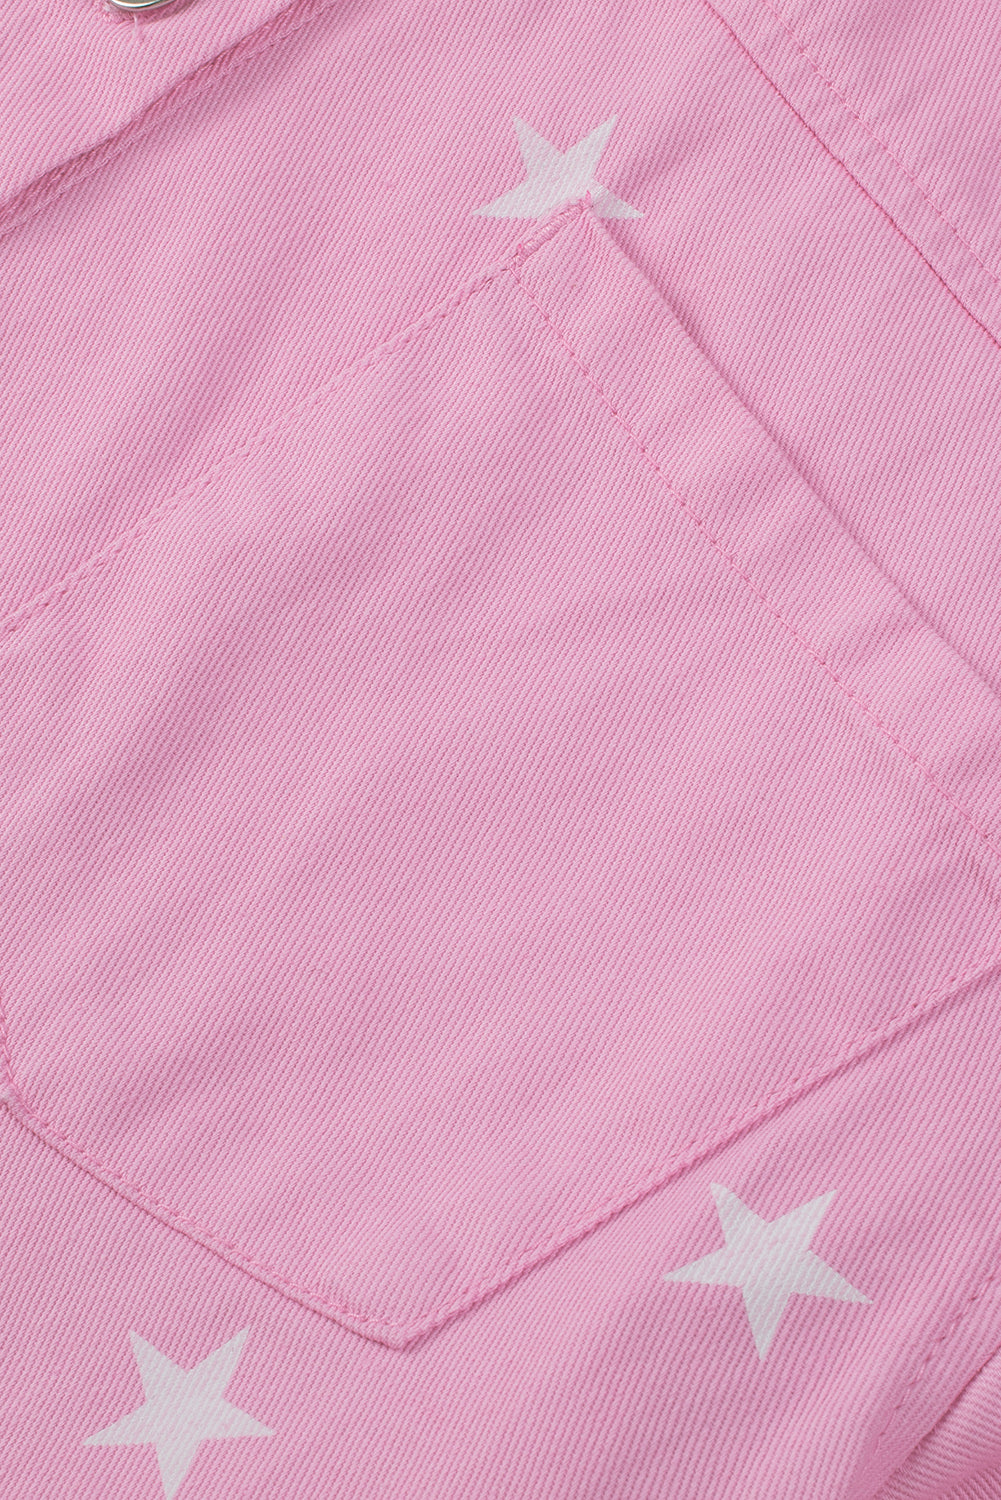 Traper jakna s ružičastim zvjezdicama i gumbima